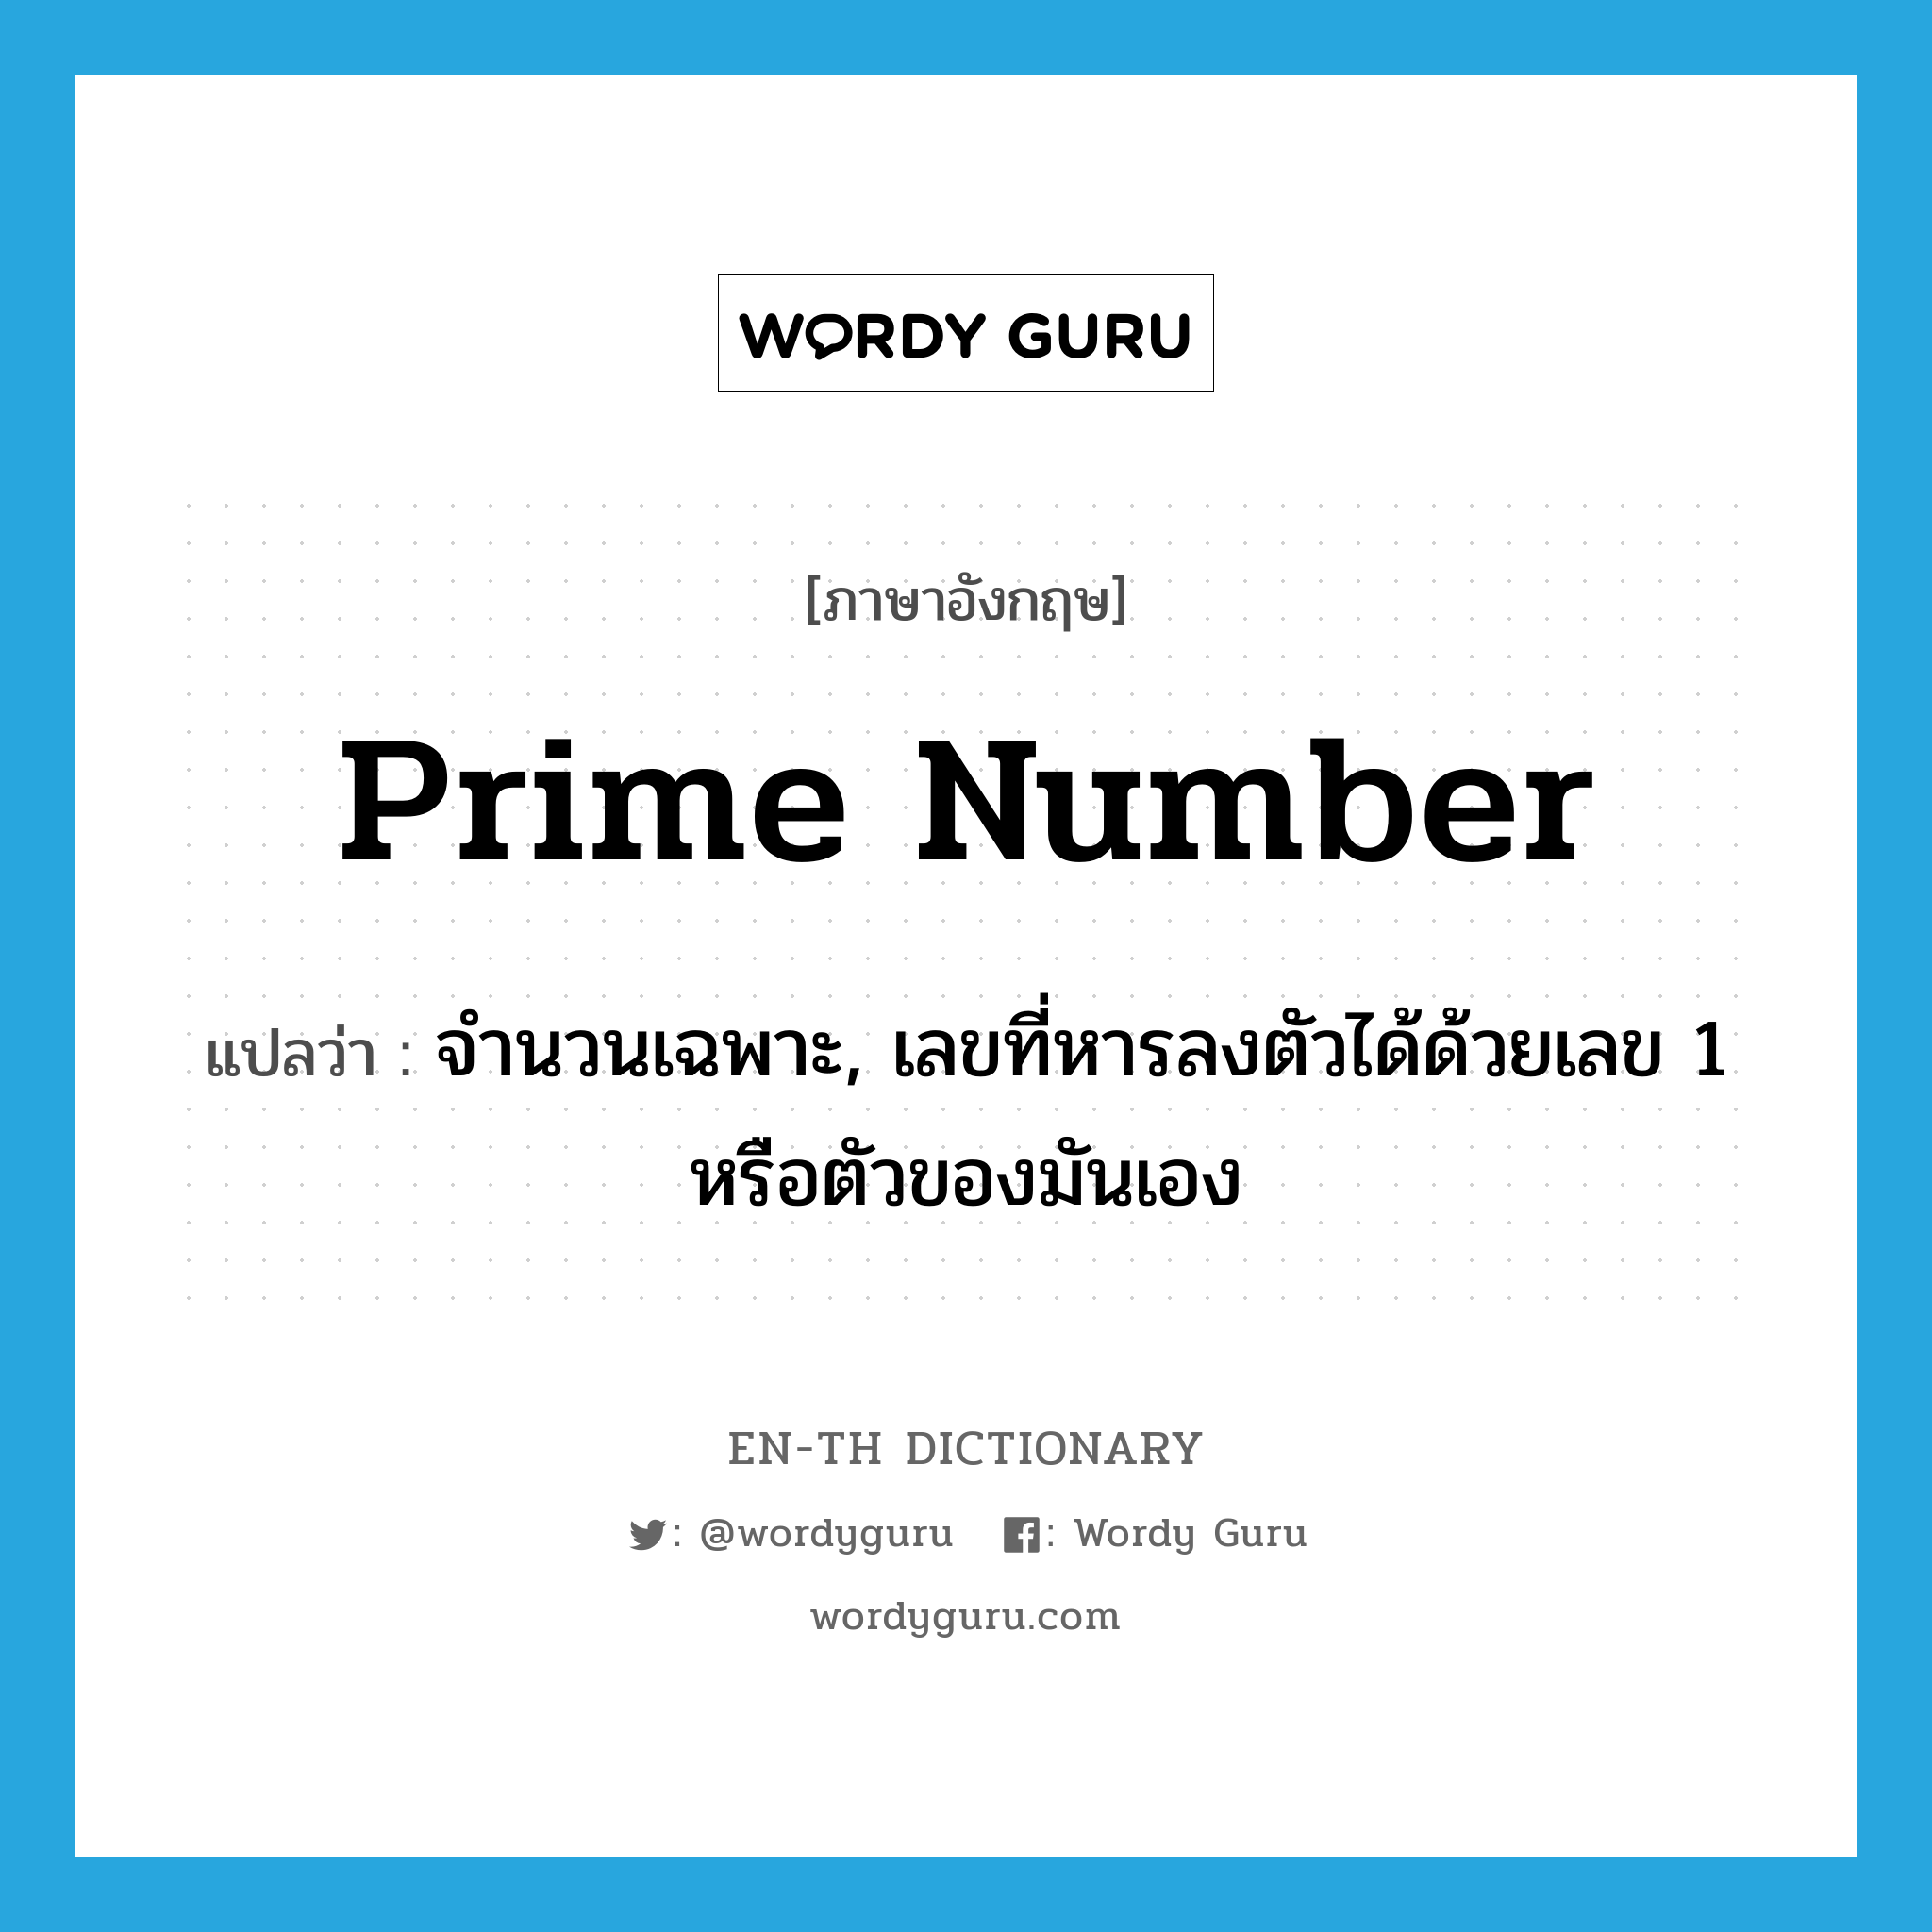 จำนวนเฉพาะ, เลขที่หารลงตัวได้ด้วยเลข 1 หรือตัวของมันเอง ภาษาอังกฤษ?, คำศัพท์ภาษาอังกฤษ จำนวนเฉพาะ, เลขที่หารลงตัวได้ด้วยเลข 1 หรือตัวของมันเอง แปลว่า prime number ประเภท N หมวด N